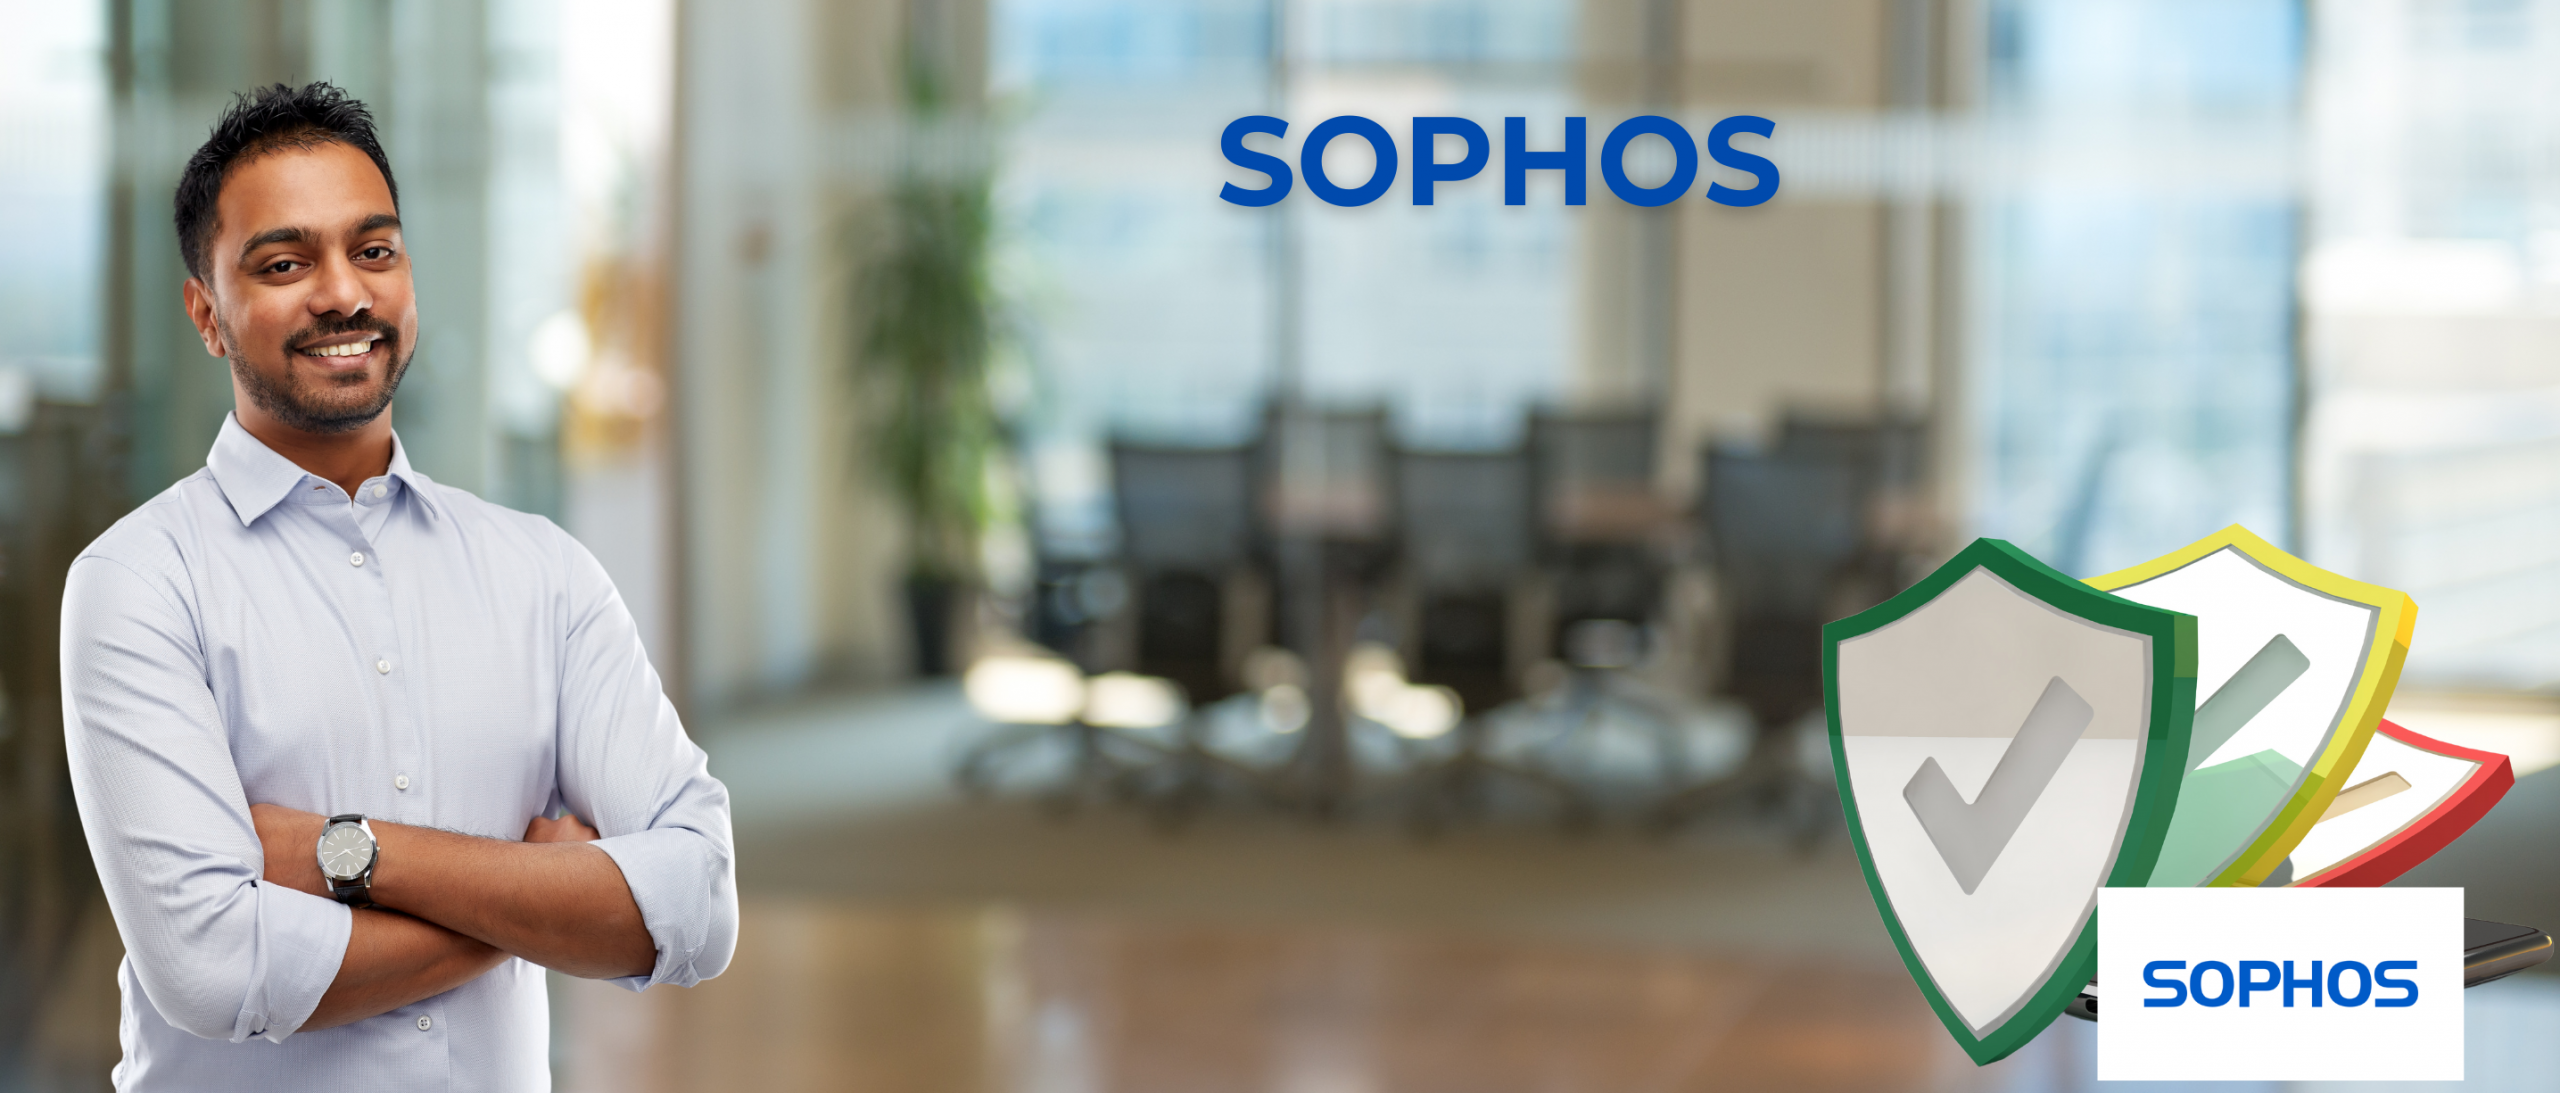 SOPHOs feature image